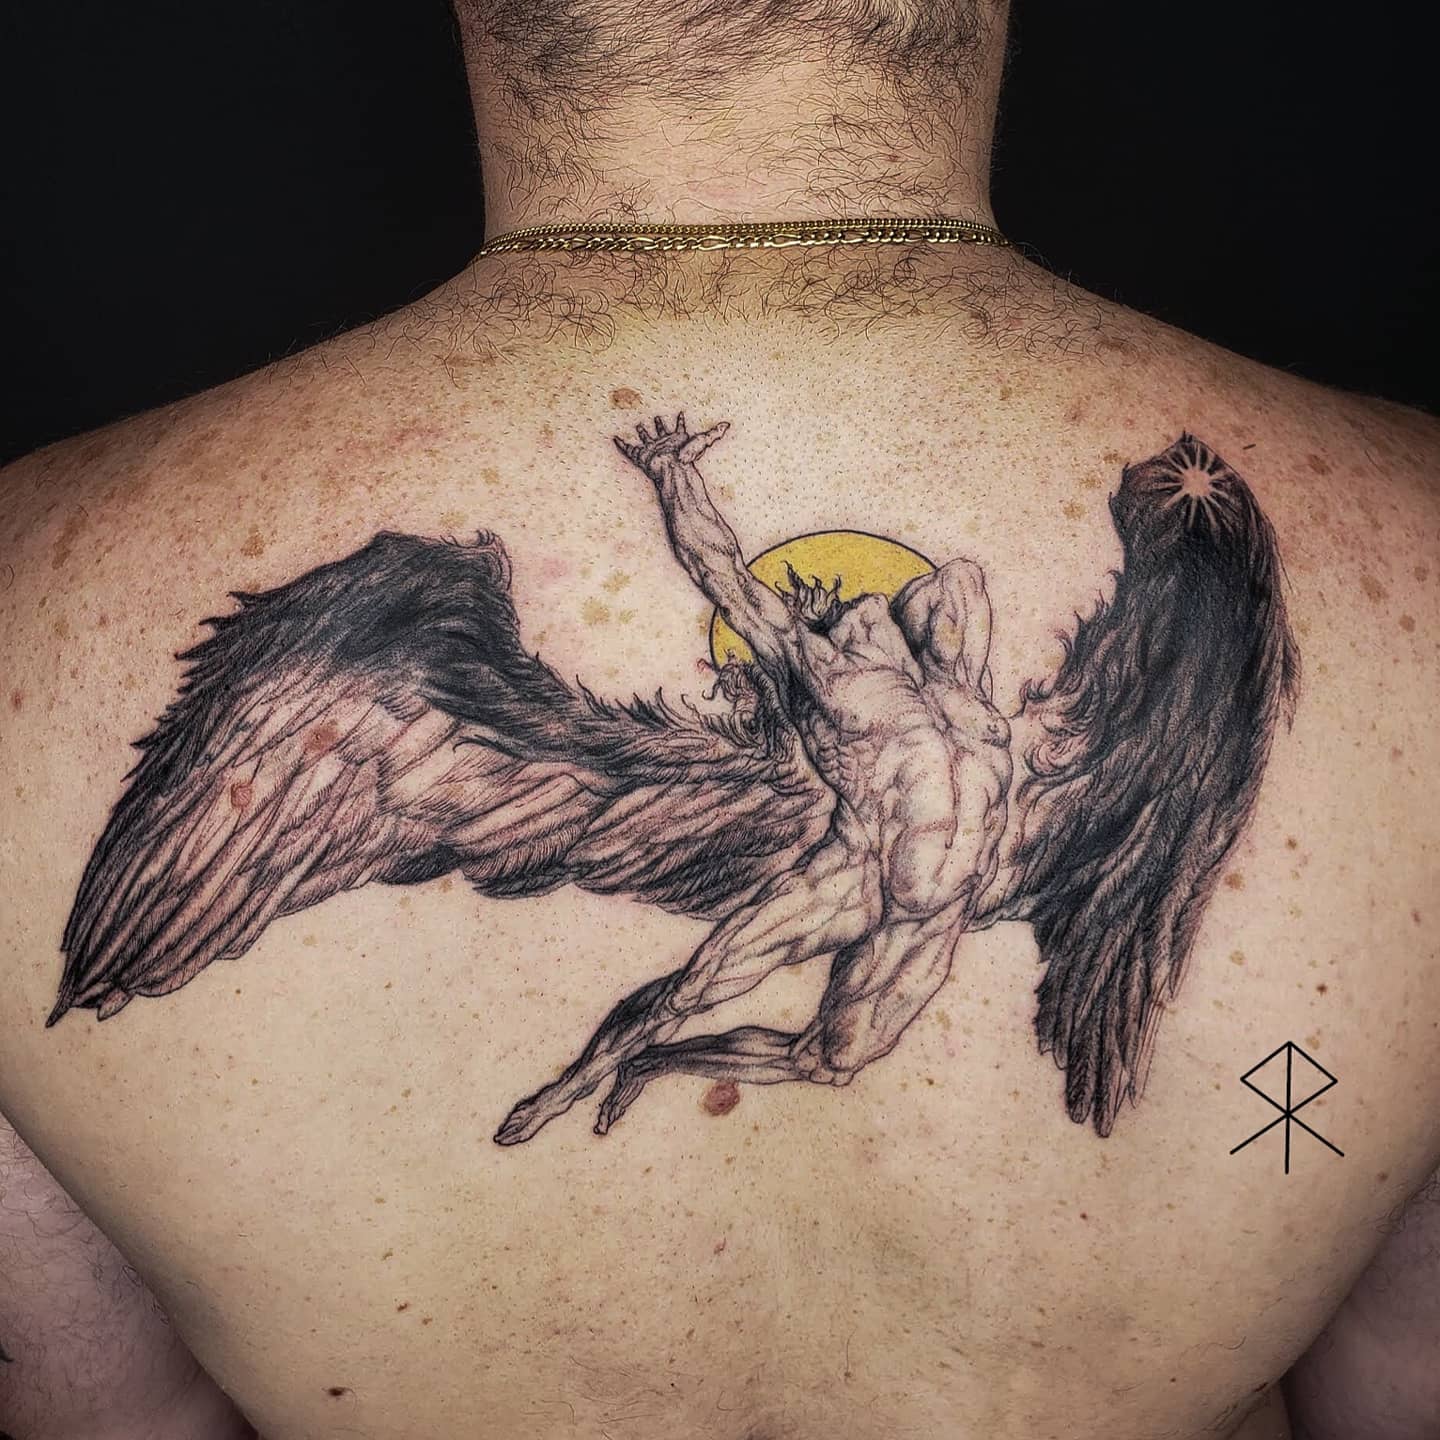 Tatuaje de Ícaro para hombres en la espalda.